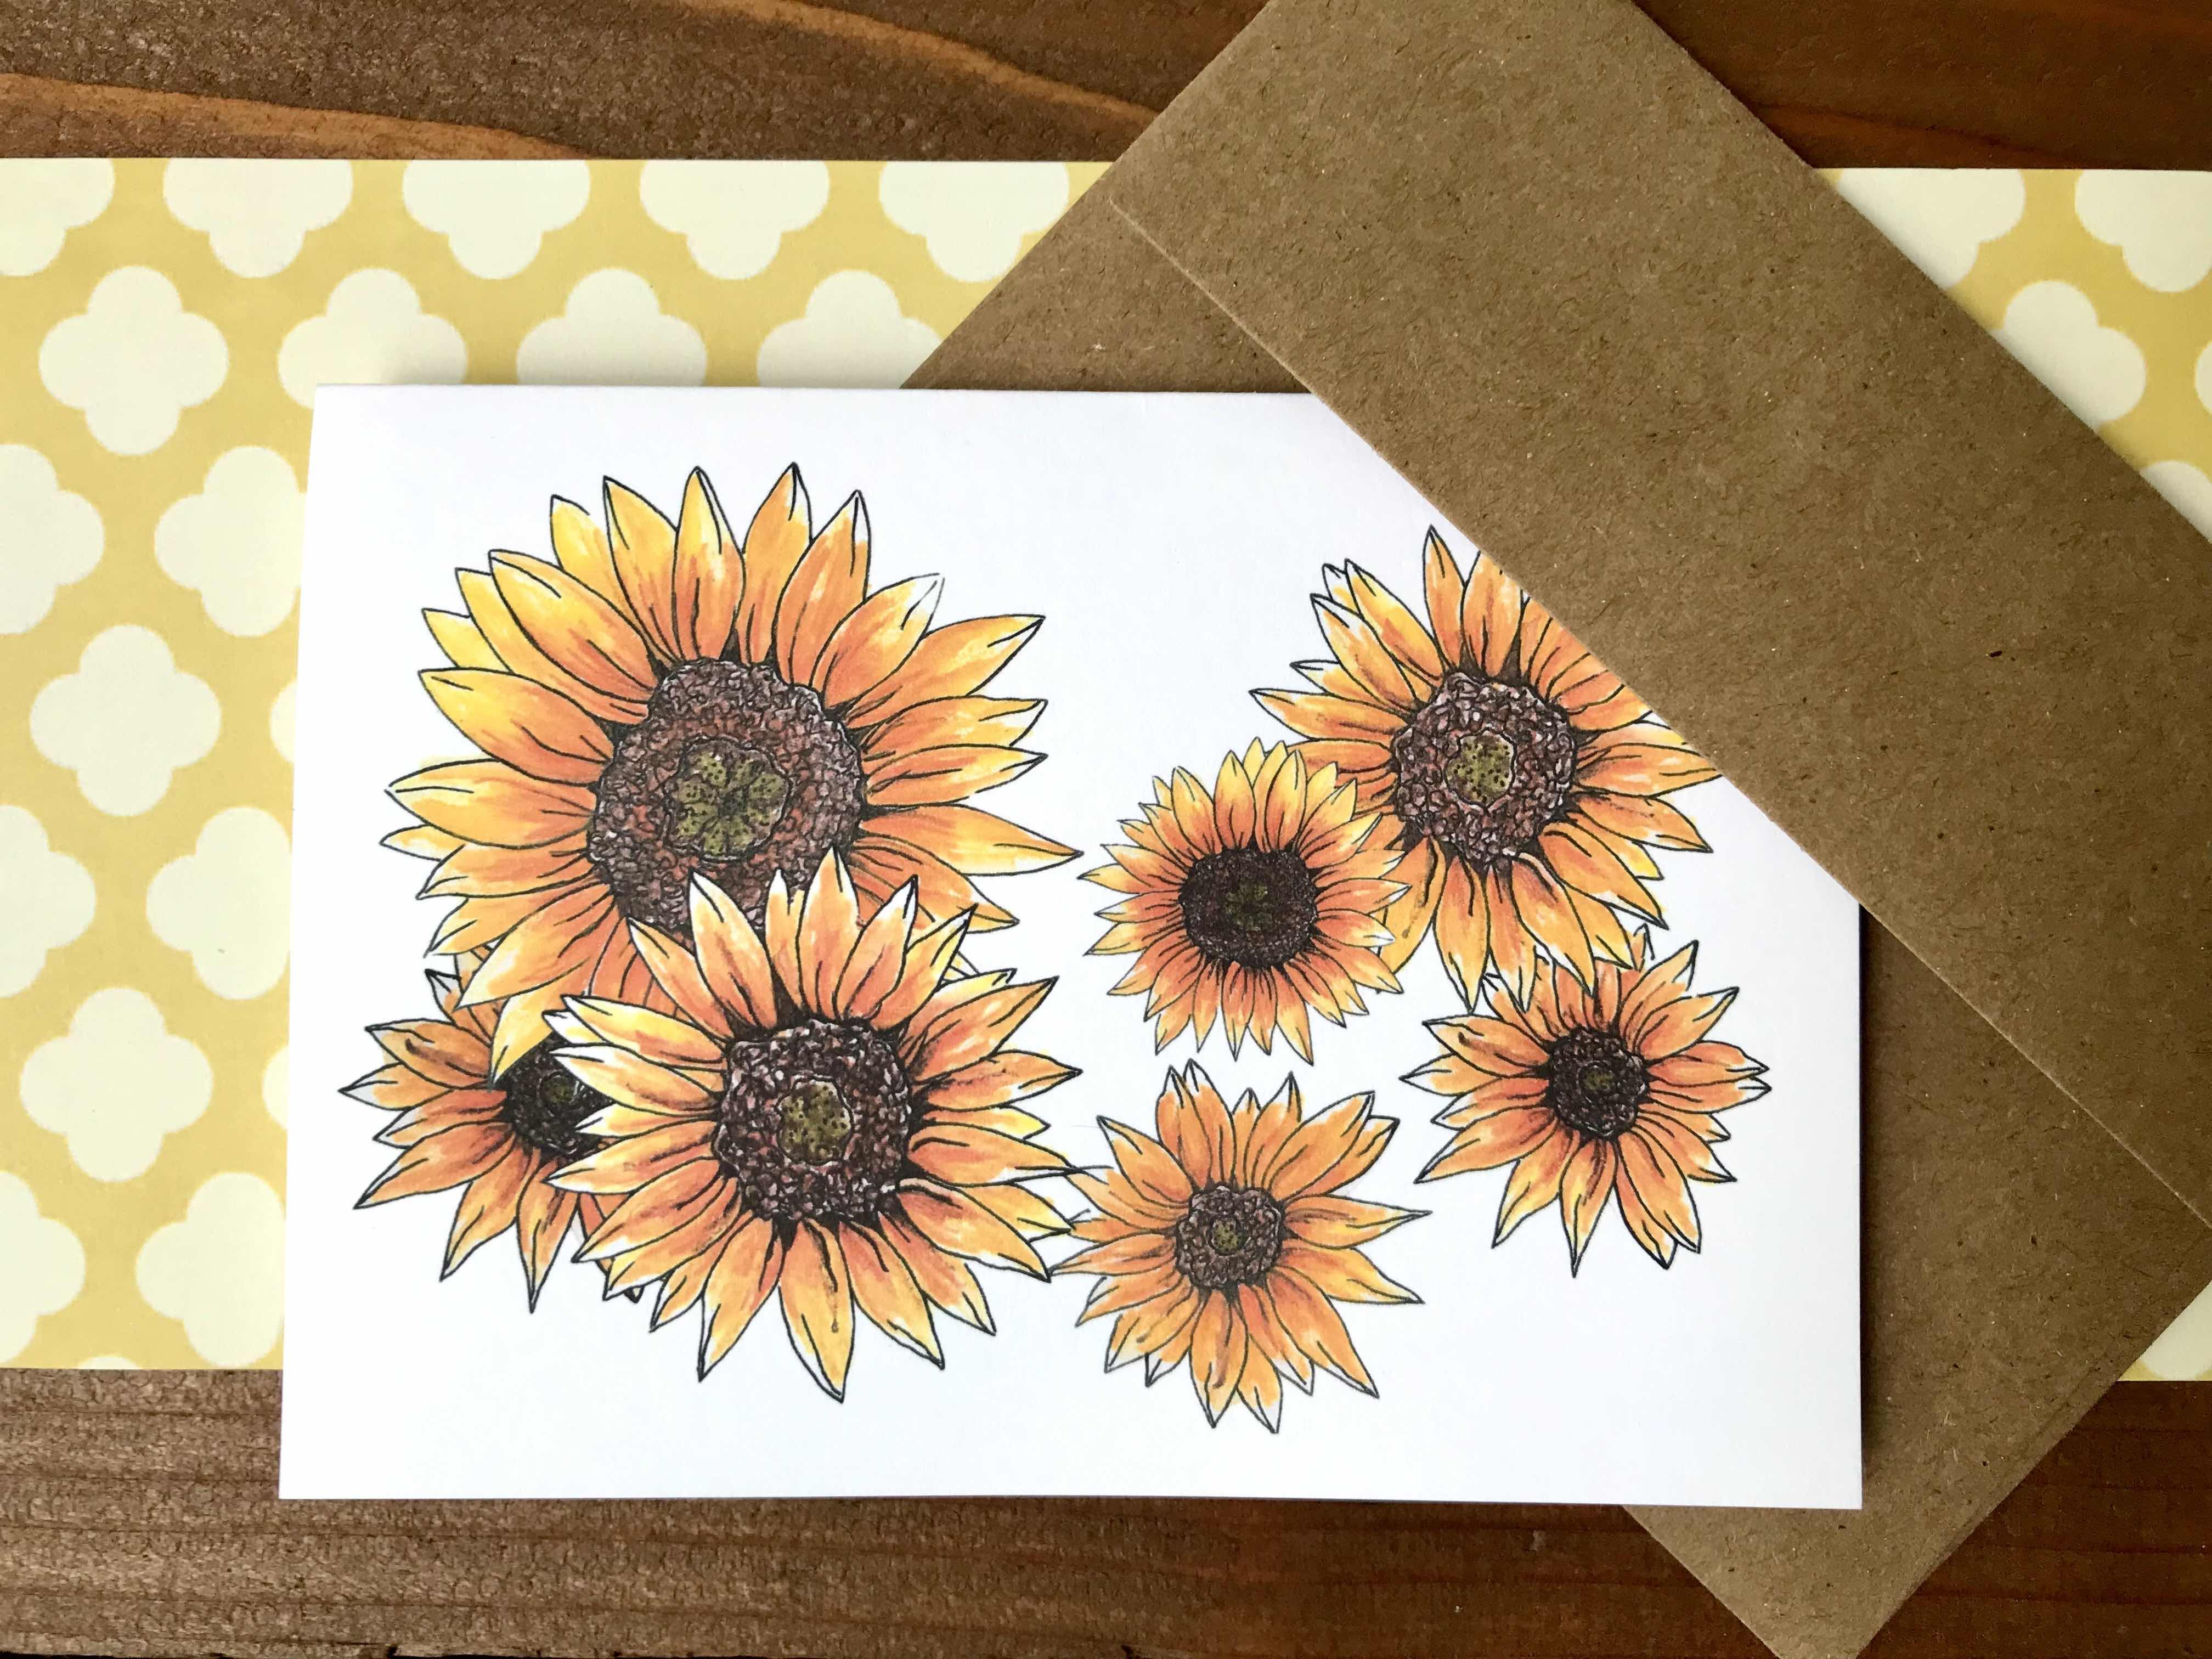 Sunflower Stationery Set Gift Bundle